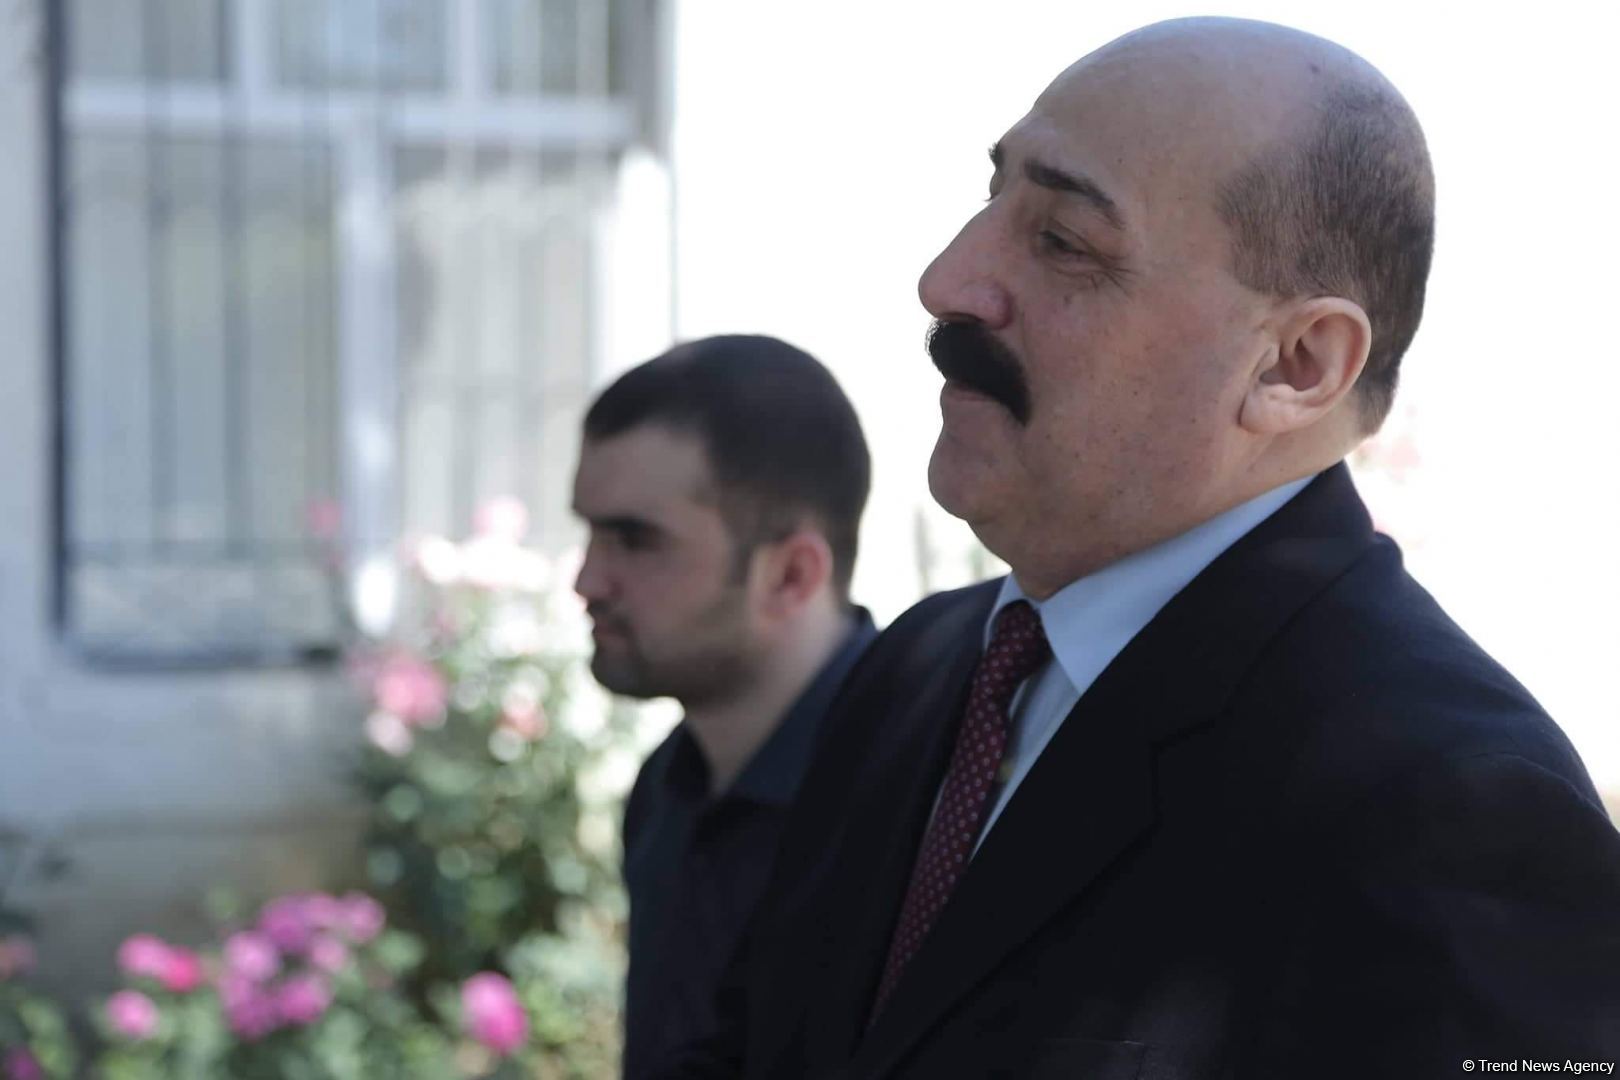 В Азербайджане в рамках распоряжения о помиловании освобожден осужденный на пожизненное заключение (ФОТО)